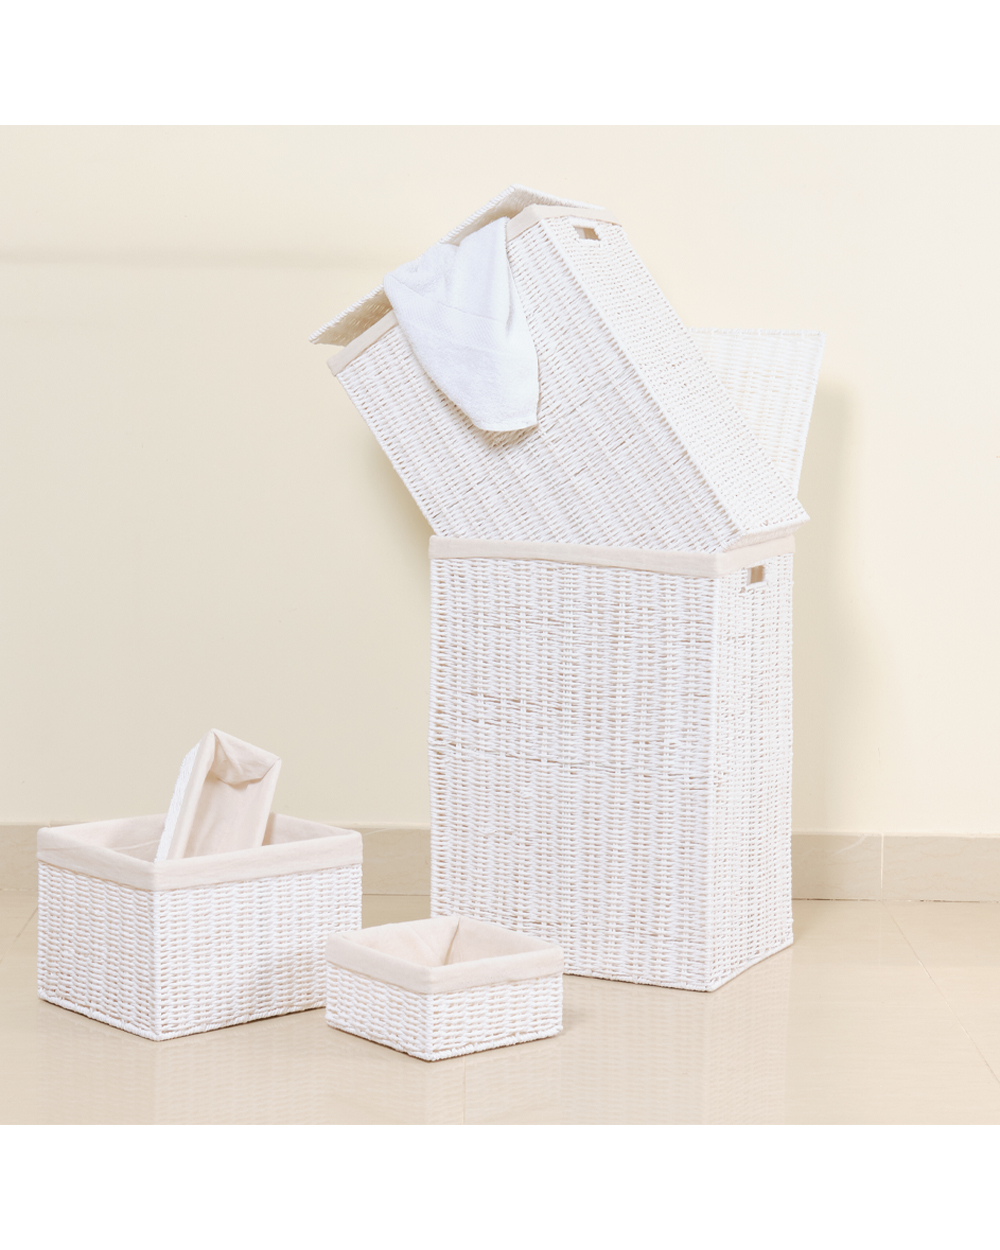 Homesmiths Medium Storage Basket White with Liner 32 x 24 x 12 cm